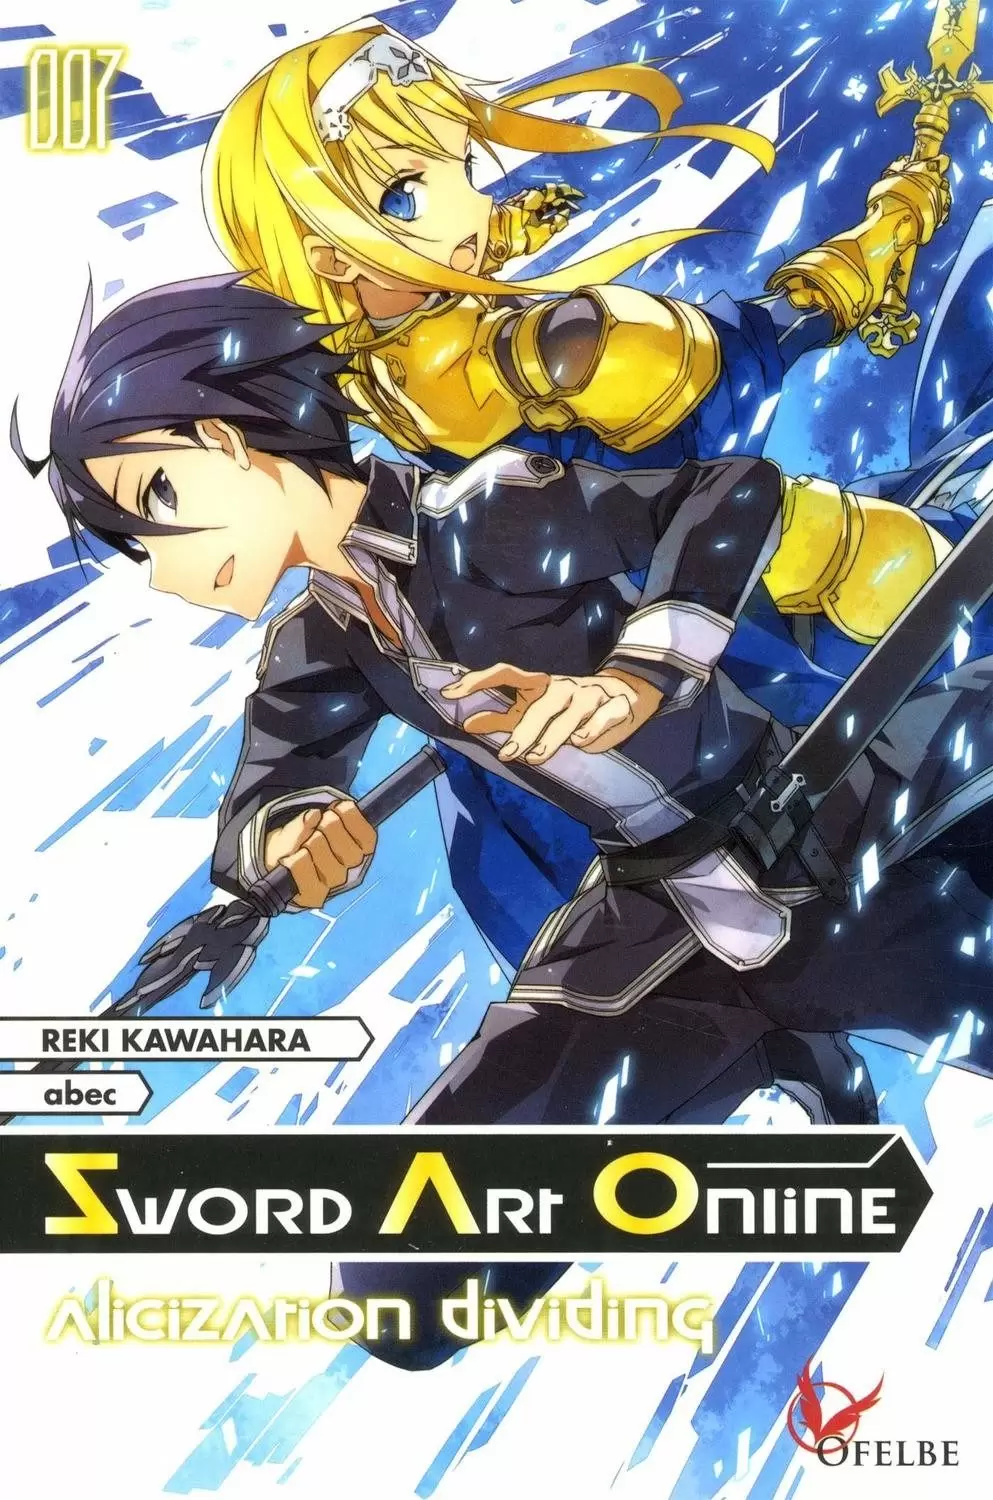 Sword Art Online - Alicization dividing